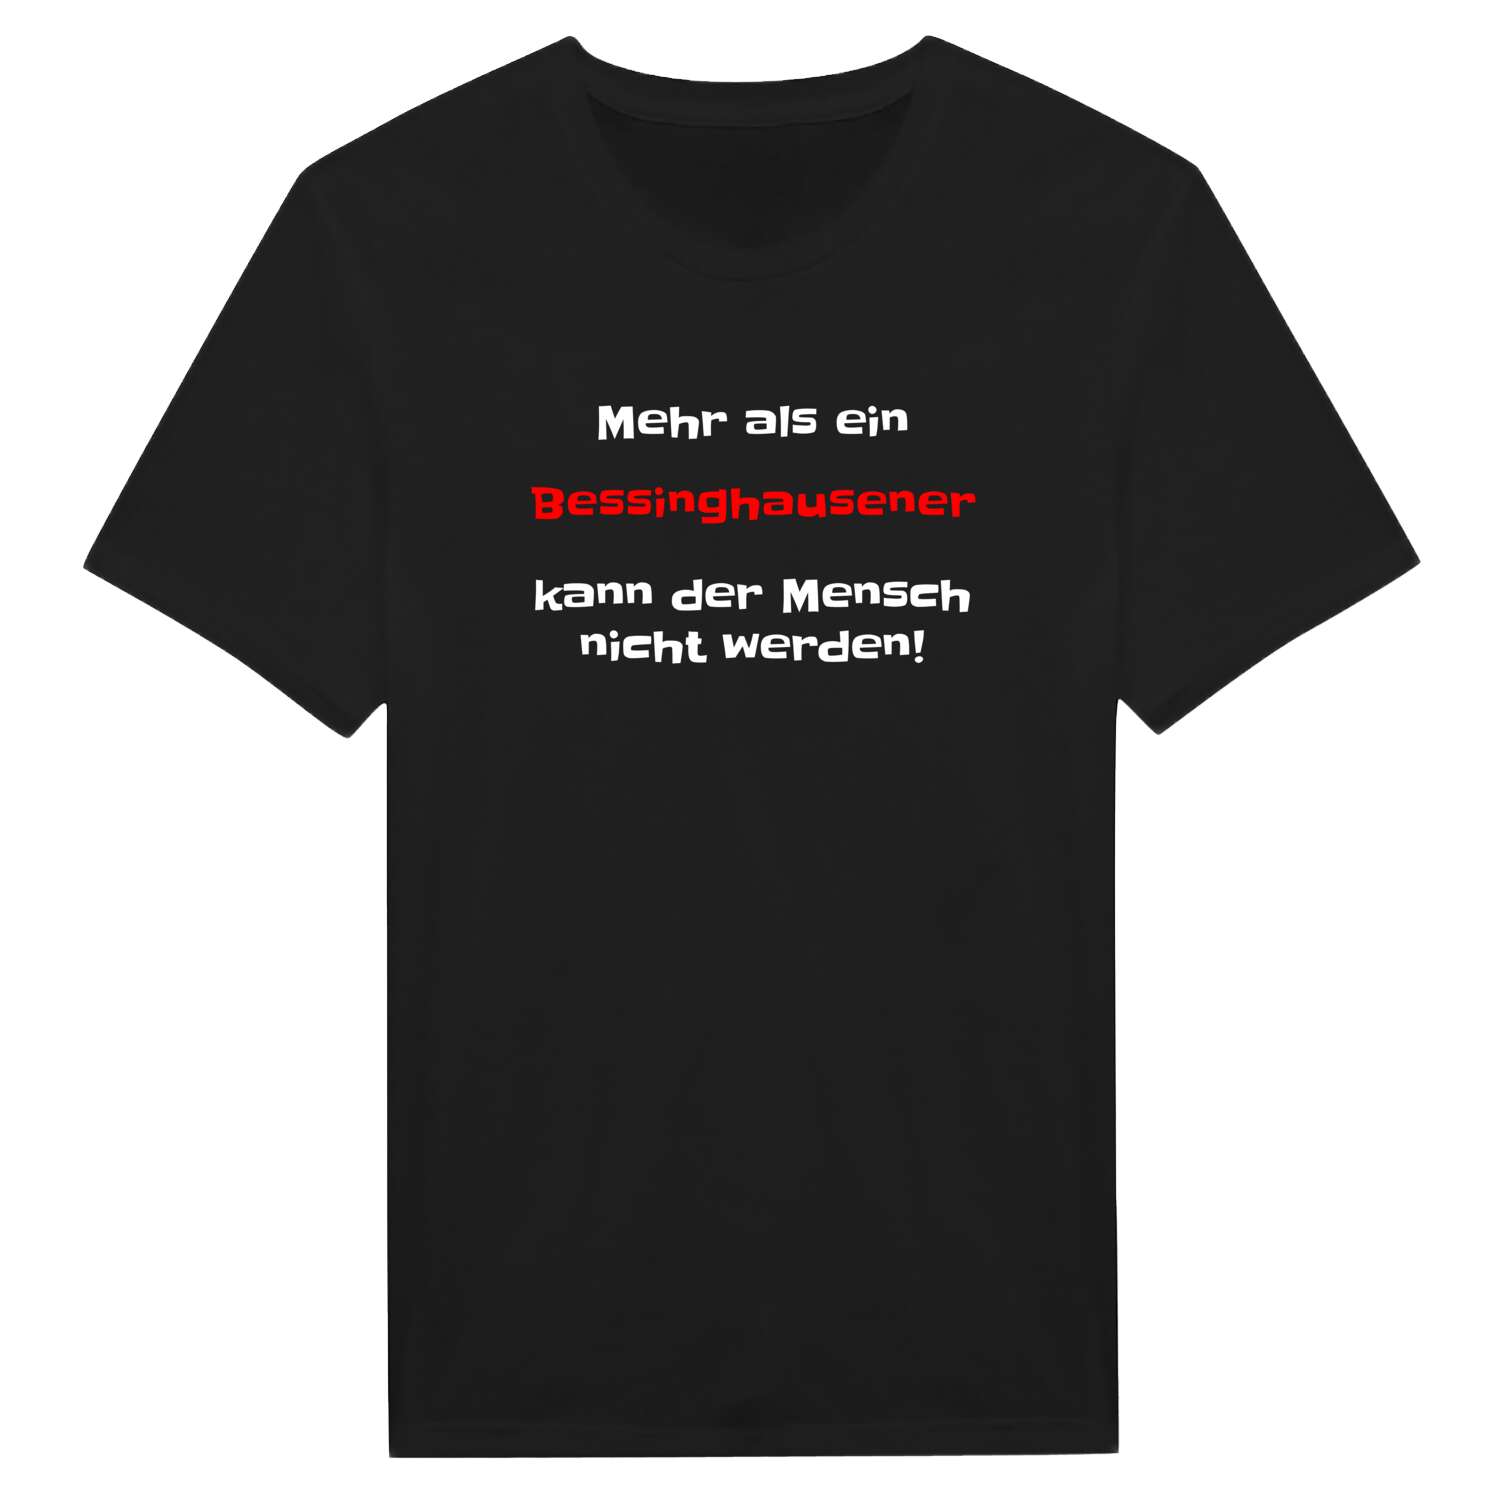 Bessinghausen T-Shirt »Mehr als ein«